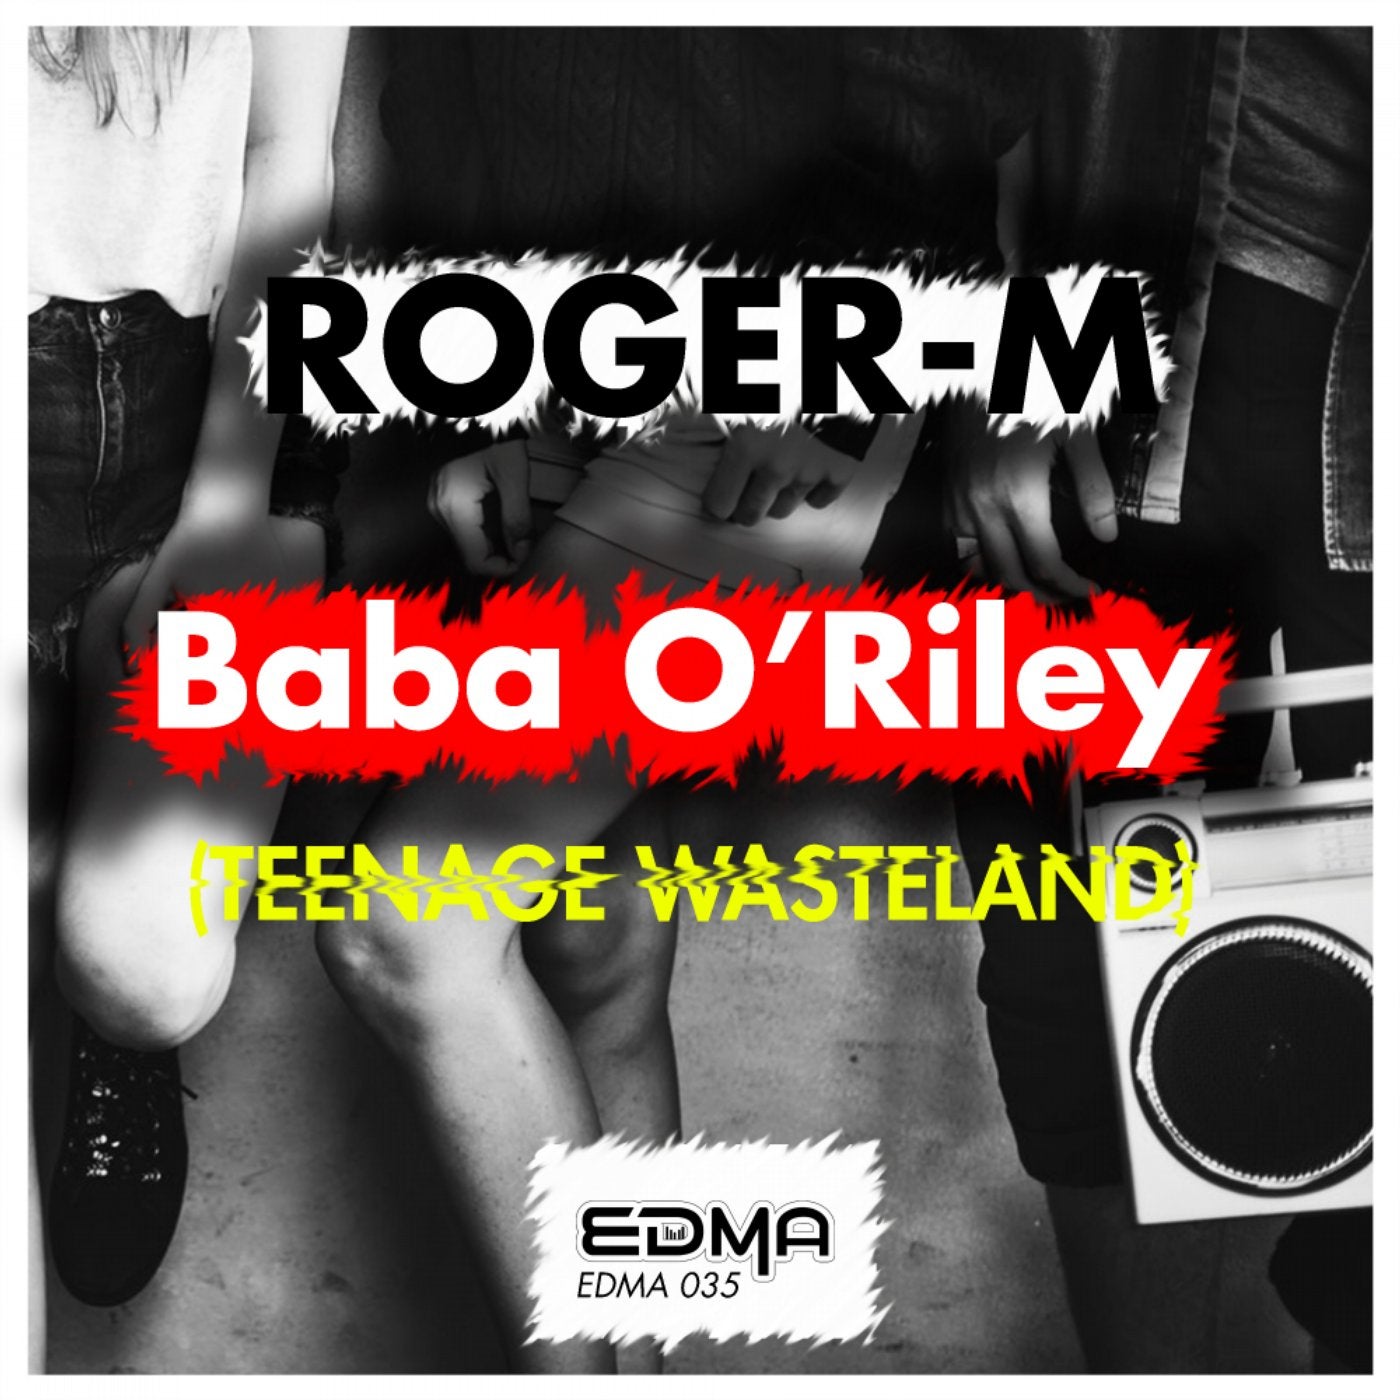 Baba O'Riley (Teenage Wasteland)